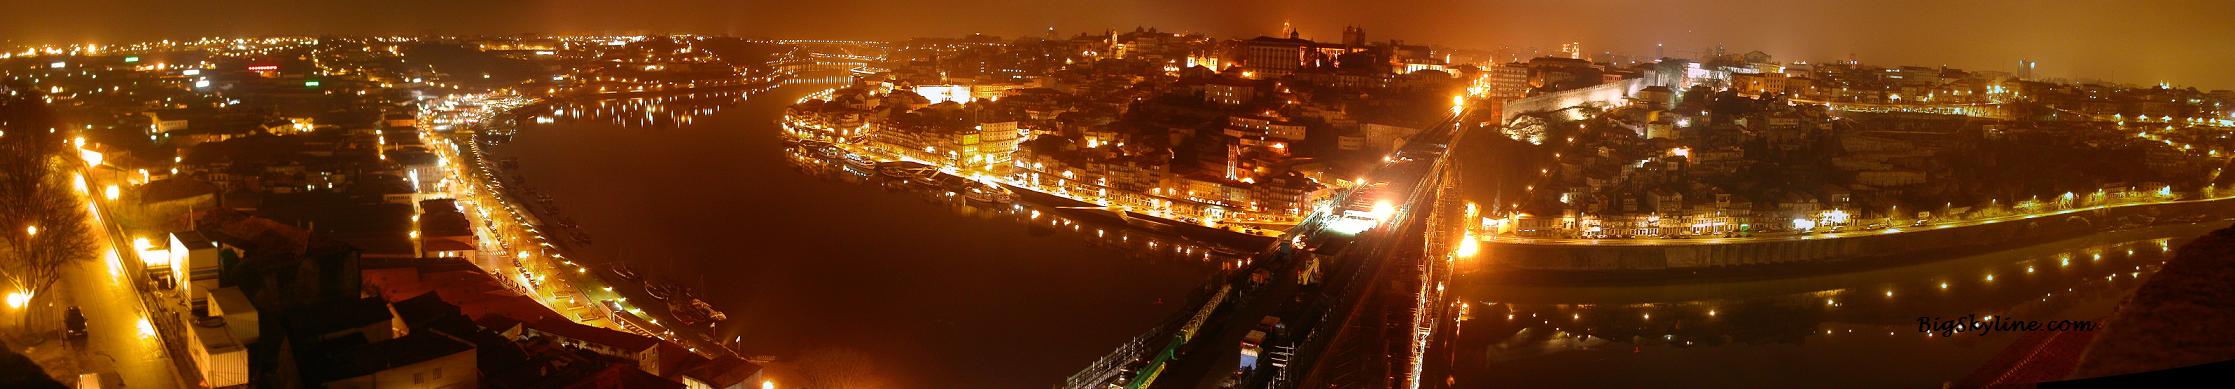 City skyline of Porto in Potrugal